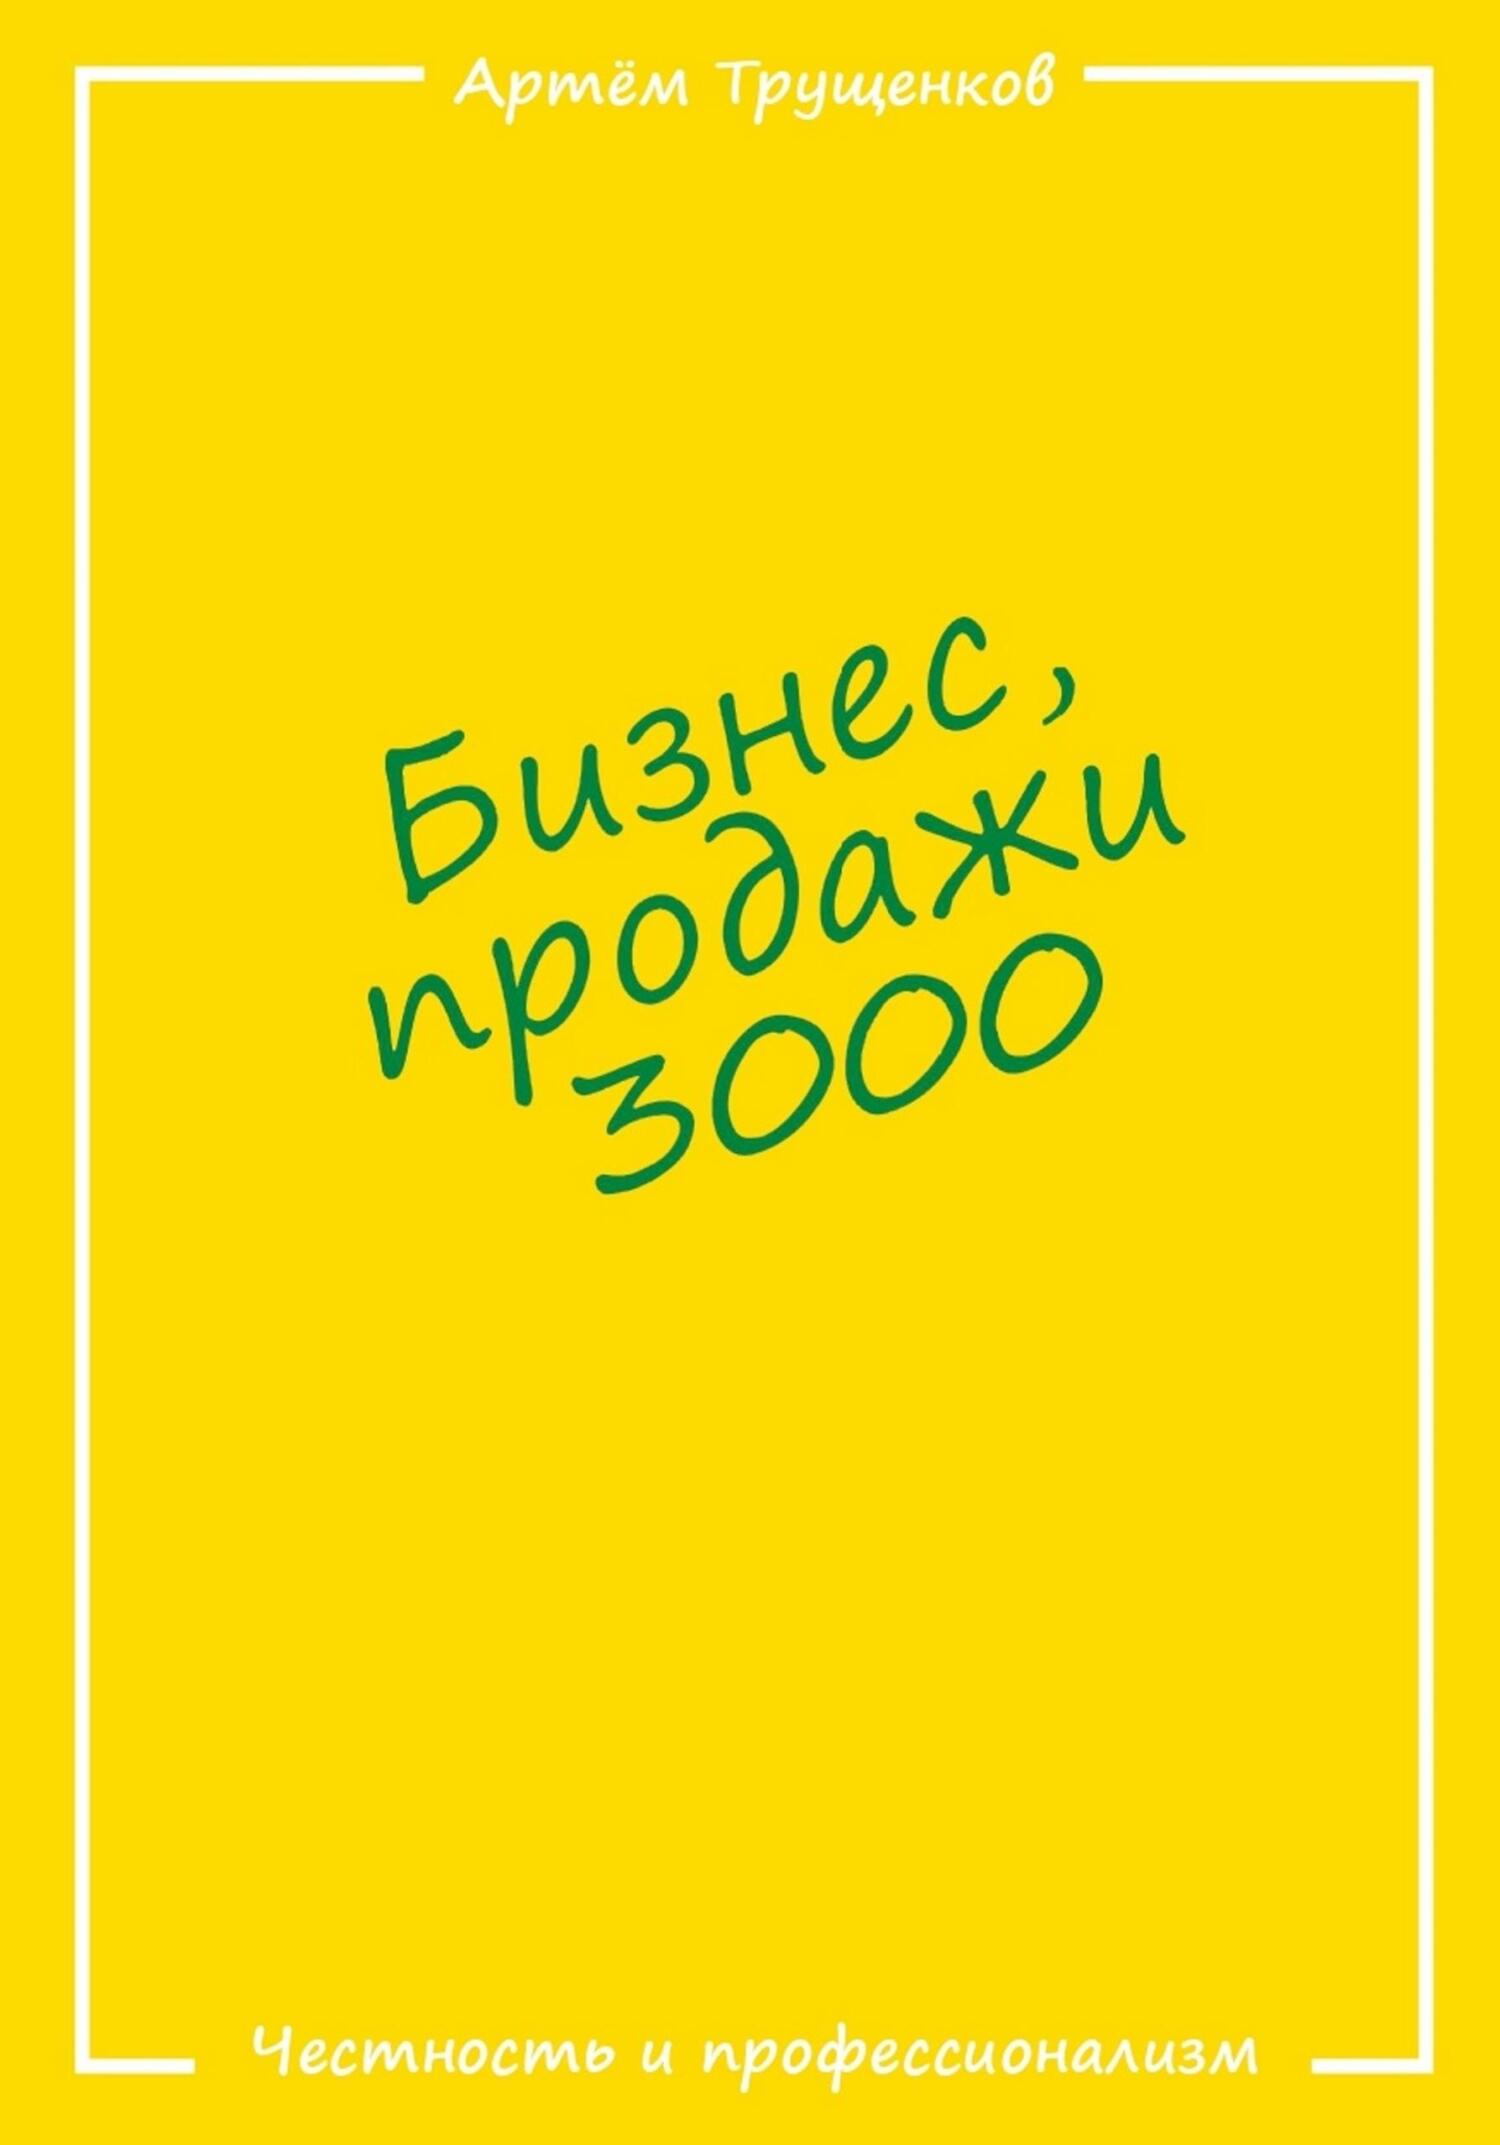 Книга  Бизнес продажи 3000 созданная Артём Евгеньевич Трущенков может относится к жанру просто о бизнесе, техника продаж, эффективность бизнеса. Стоимость электронной книги Бизнес продажи 3000 с идентификатором 68775873 составляет 299.00 руб.